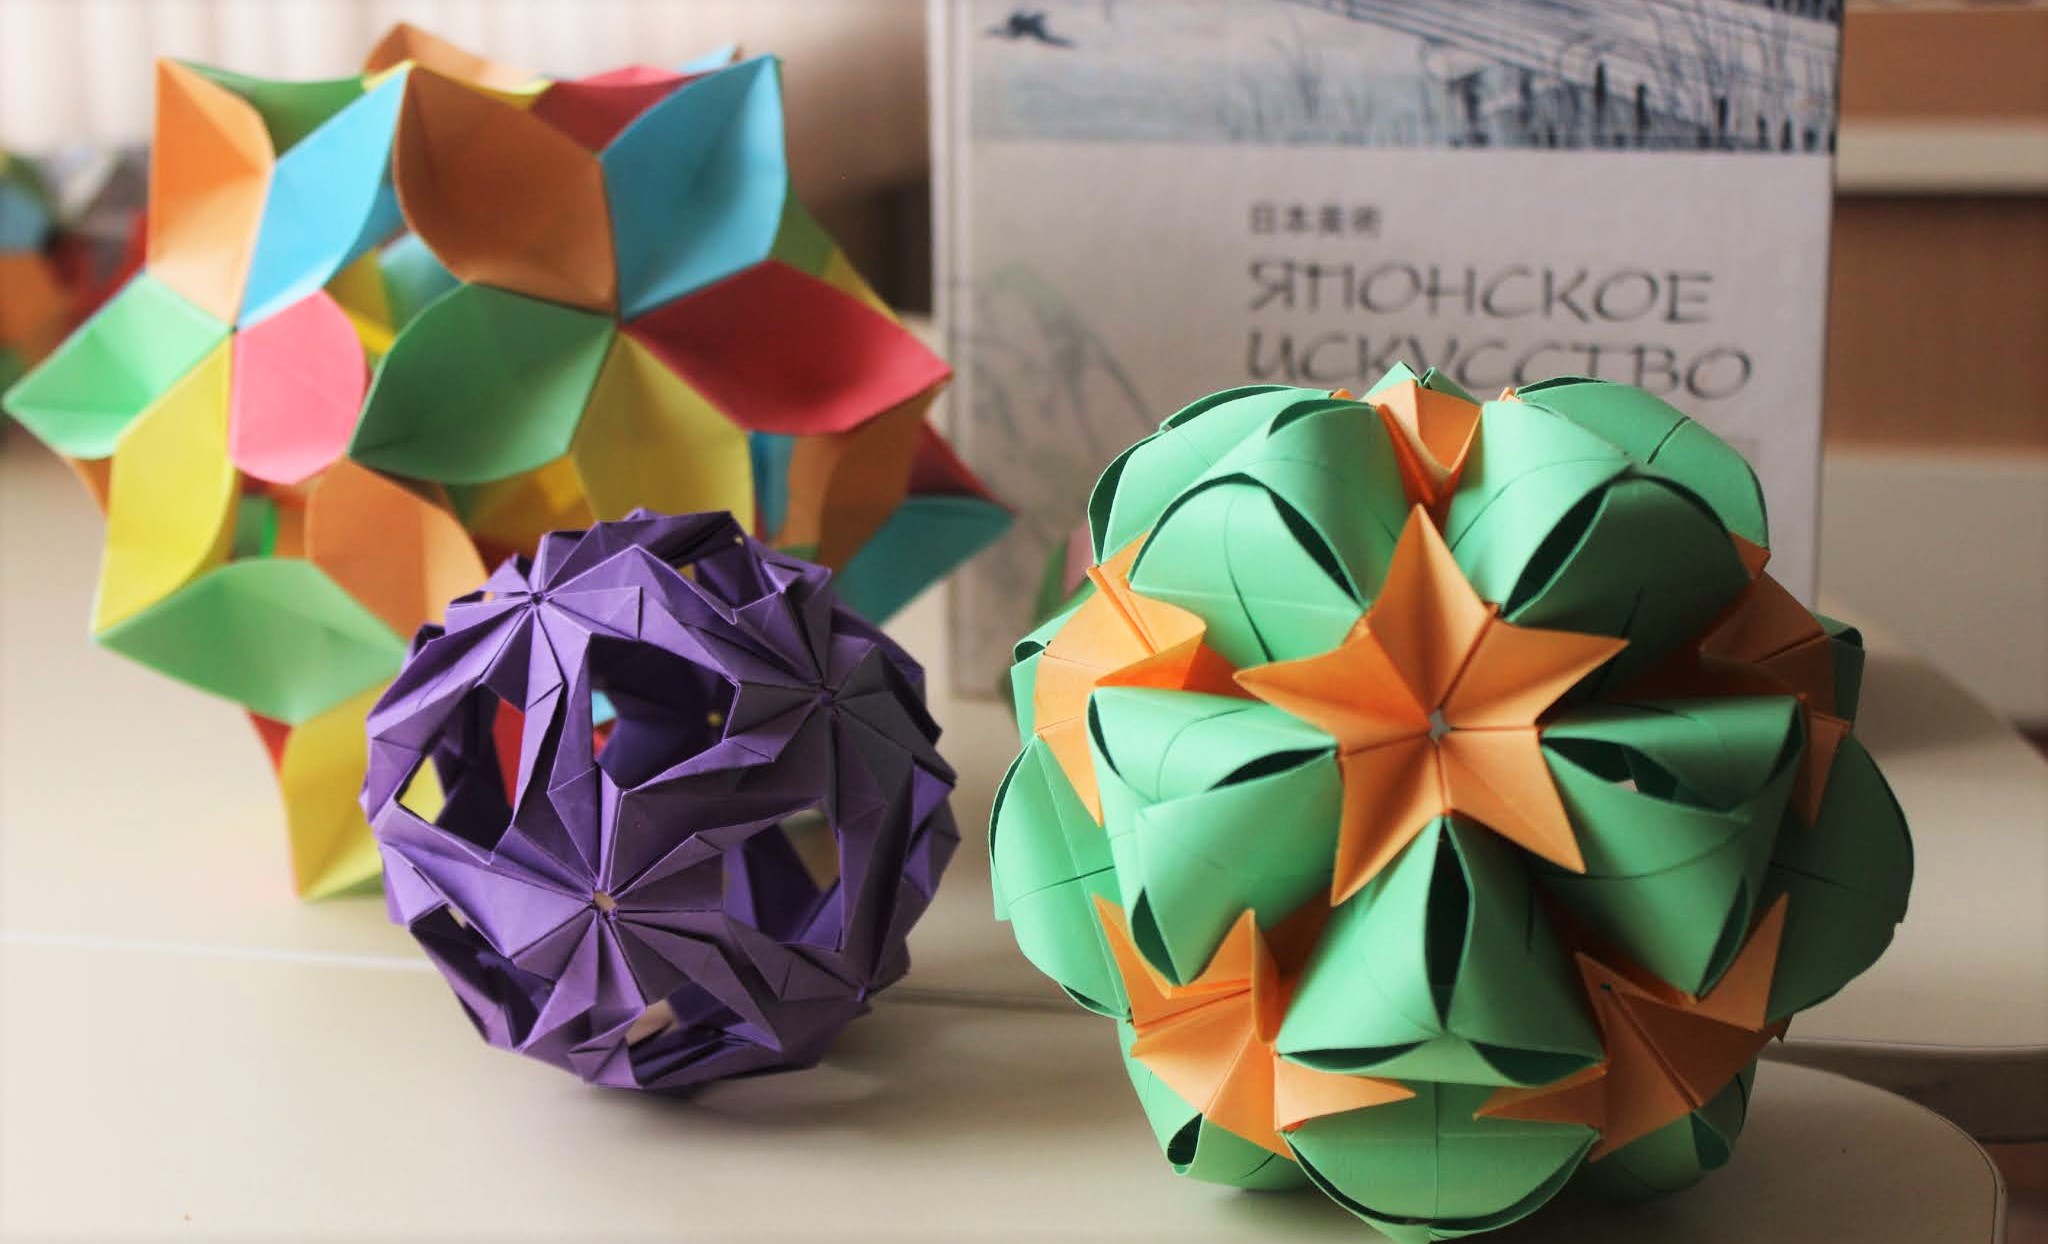 Искусство оригами тесно связано с законами математики и геометрии Предлагаем разобраться в их взаимодействии с помощью фото и видеоуроков